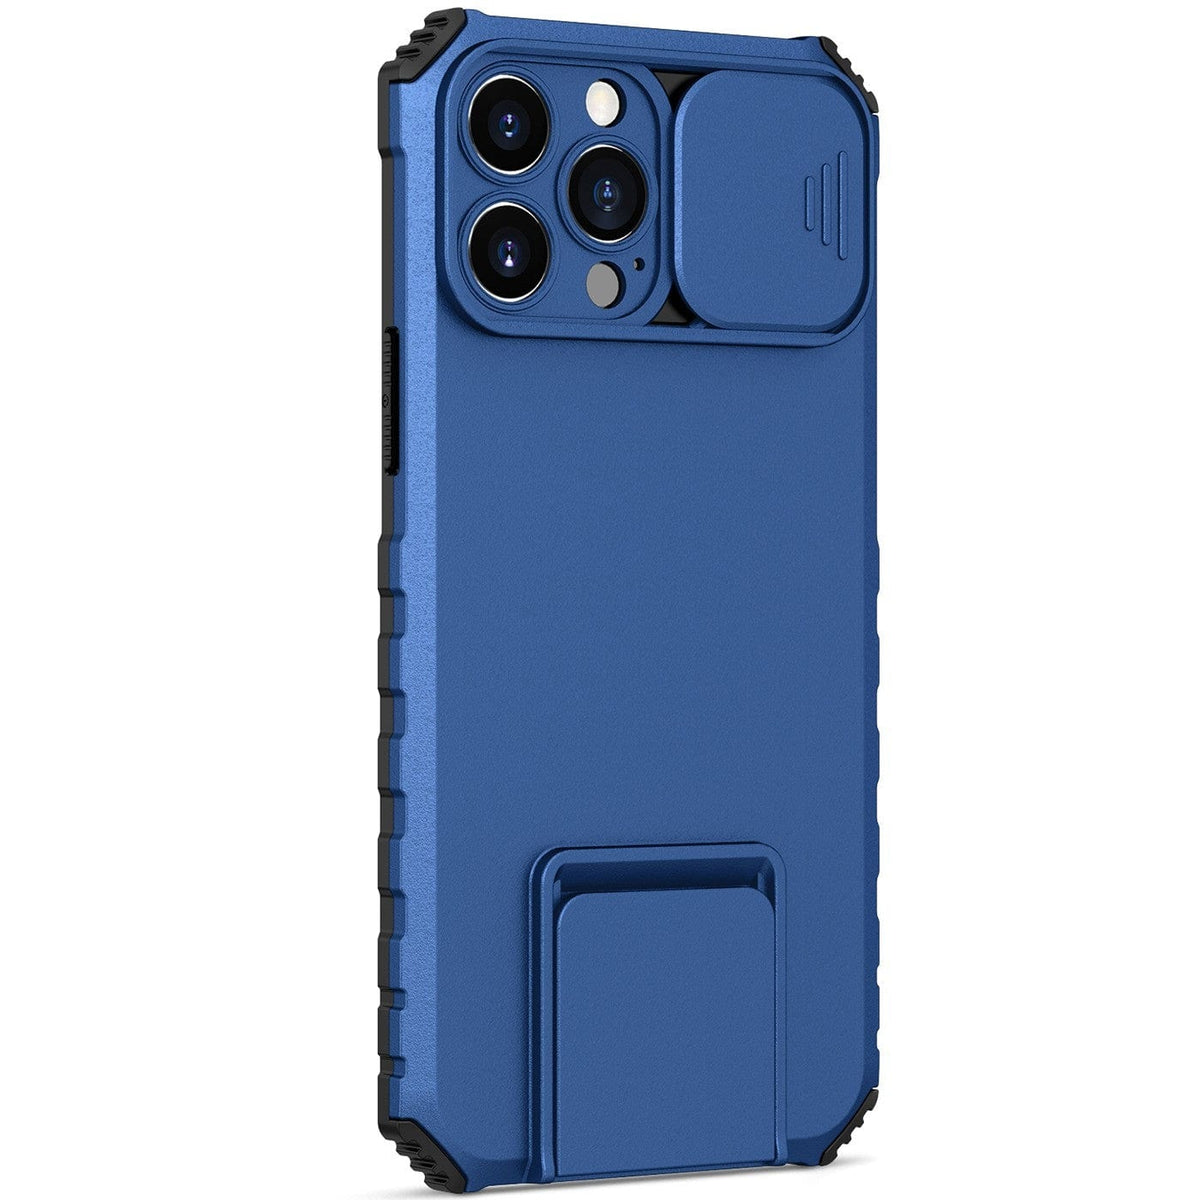 Husa Defender cu Stand pentru iPhone 13 Pro Max, Albastru, Suport reglabil, Antisoc, Protectie glisanta pentru camera